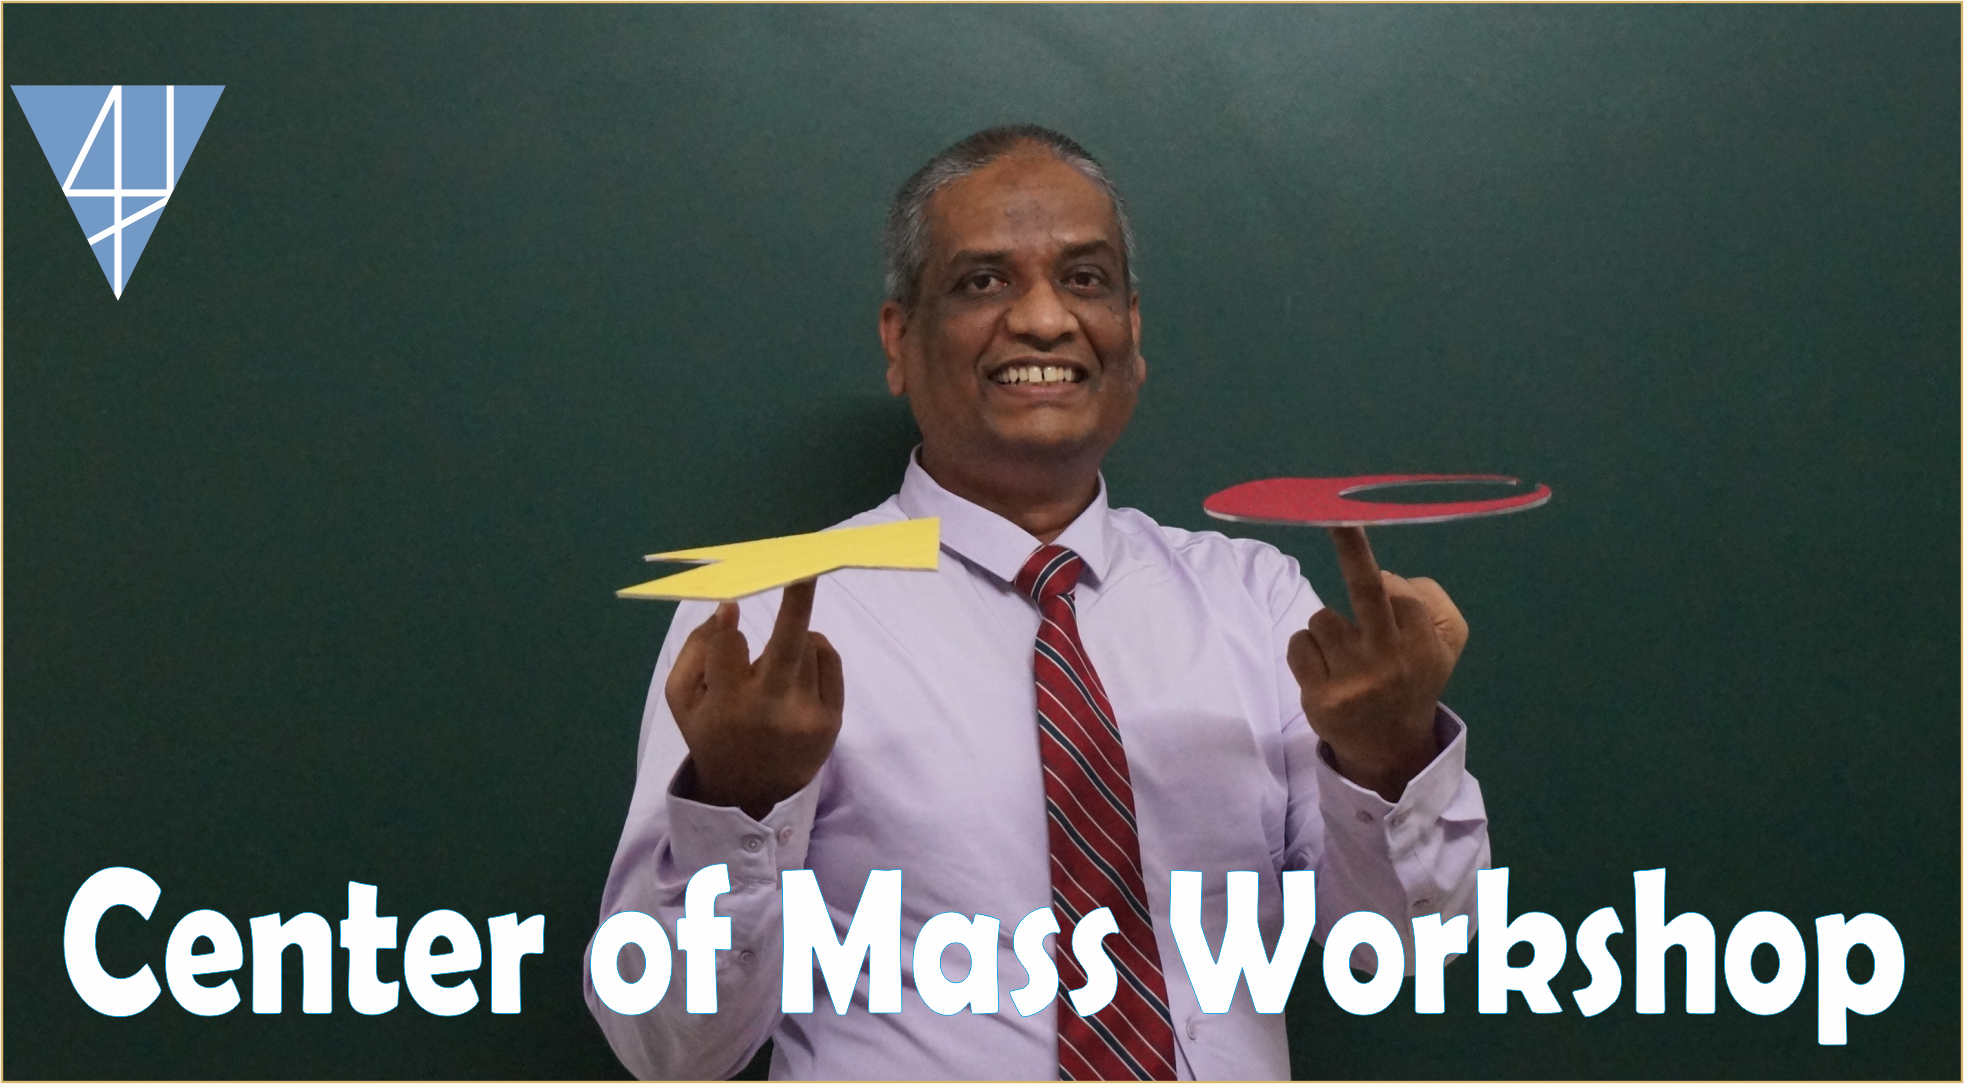 Center of Mass Workshop